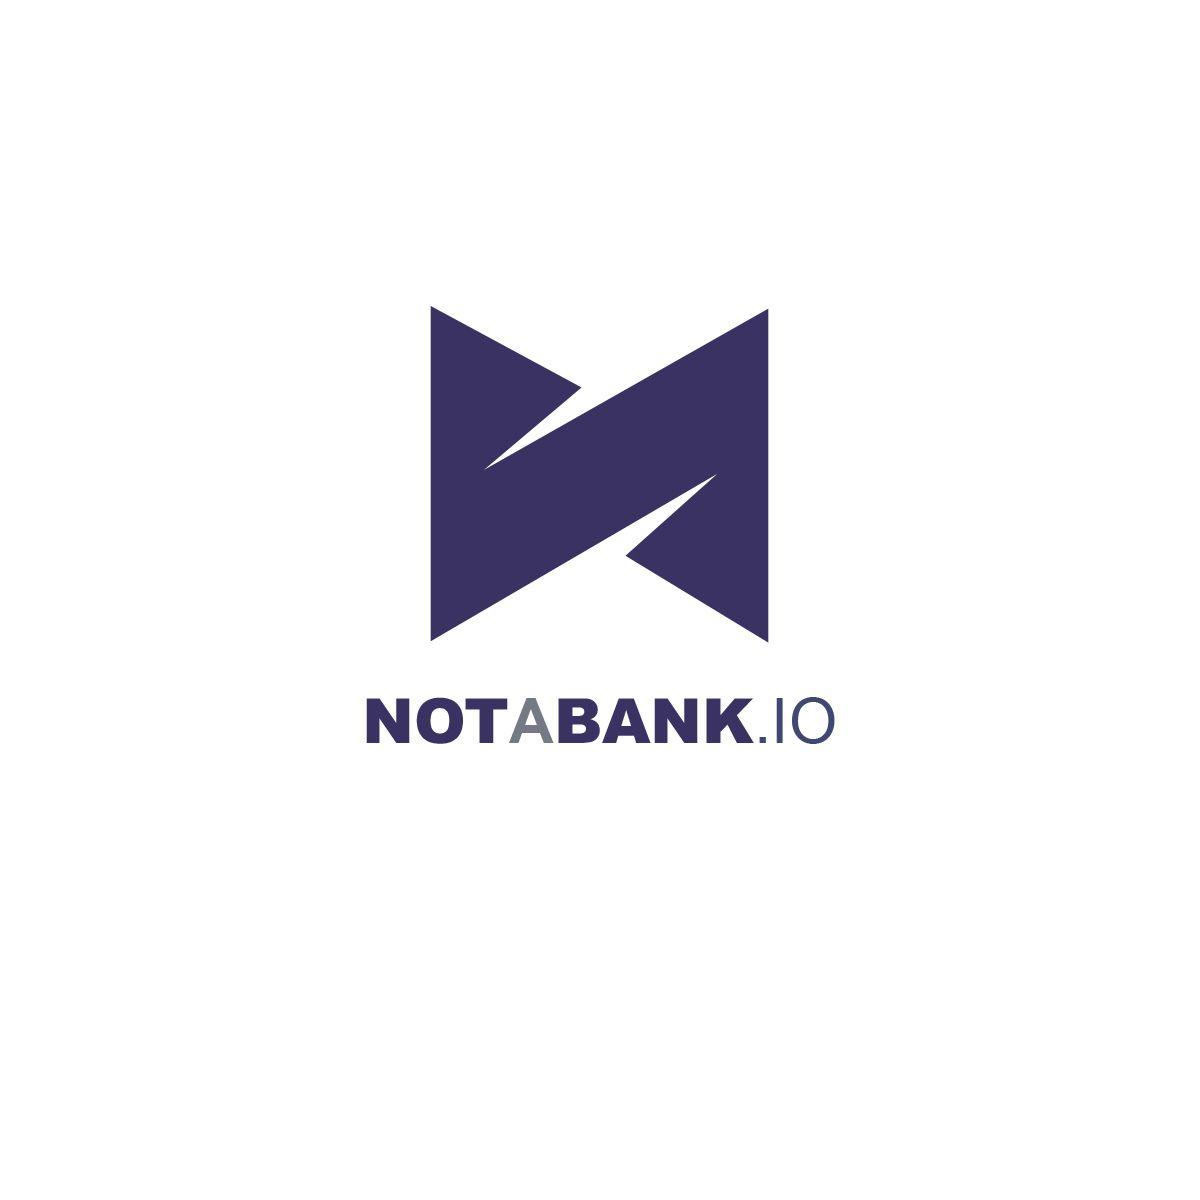 IATA Logo - Logo Design for not a bank.io by hvdesigns. Design